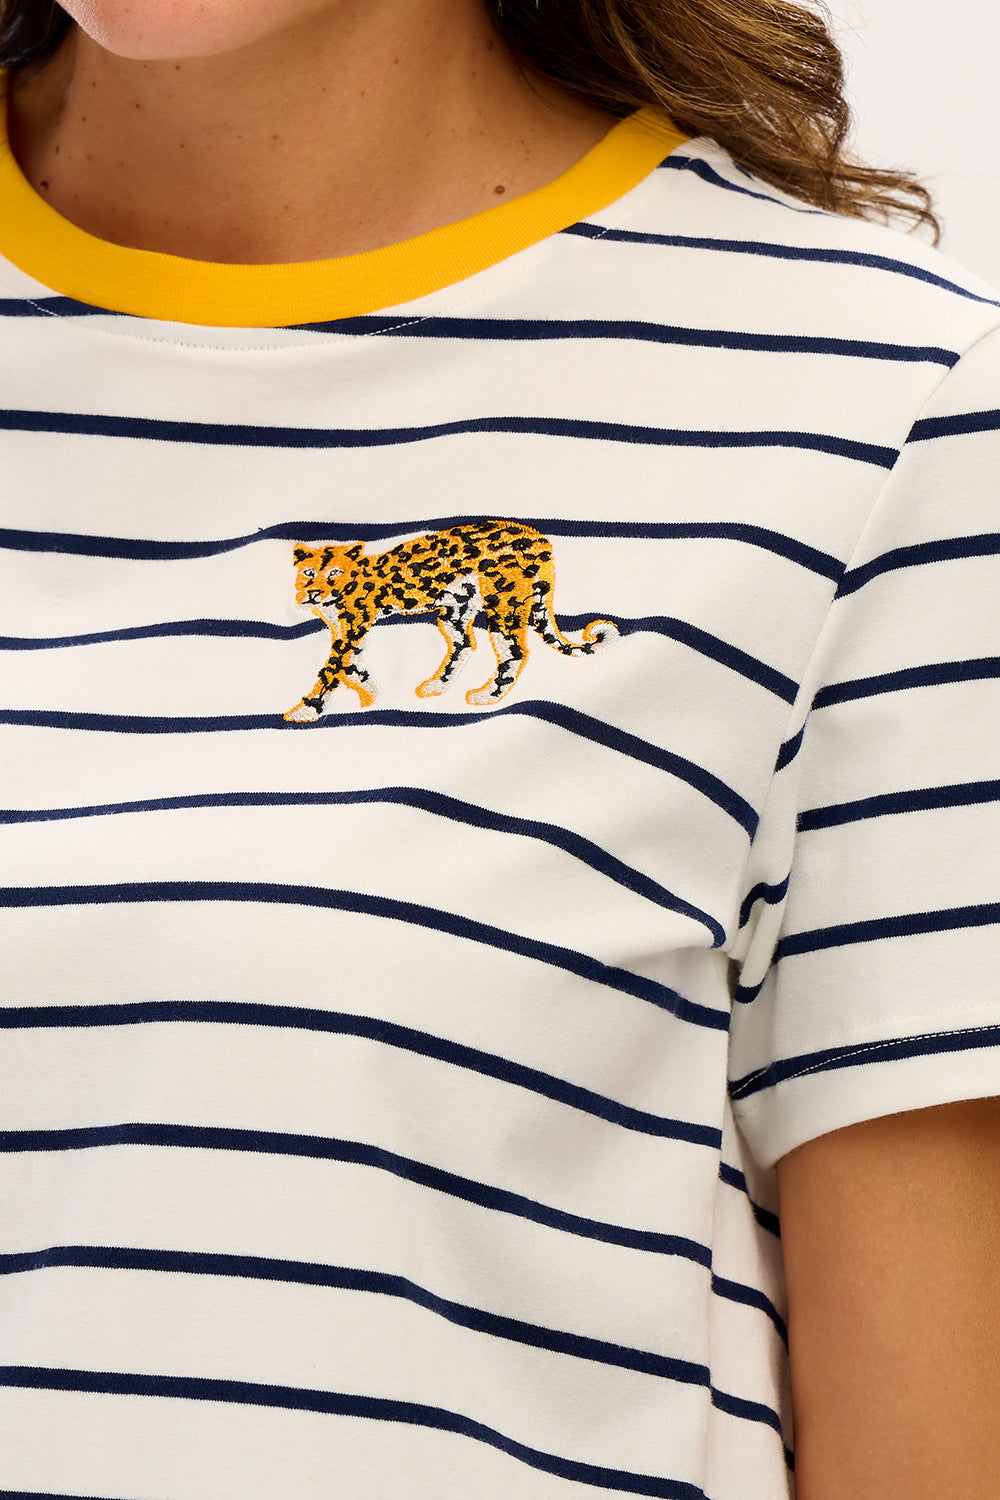 Sugarhill - Maggie T-shirt - Leopard Navy